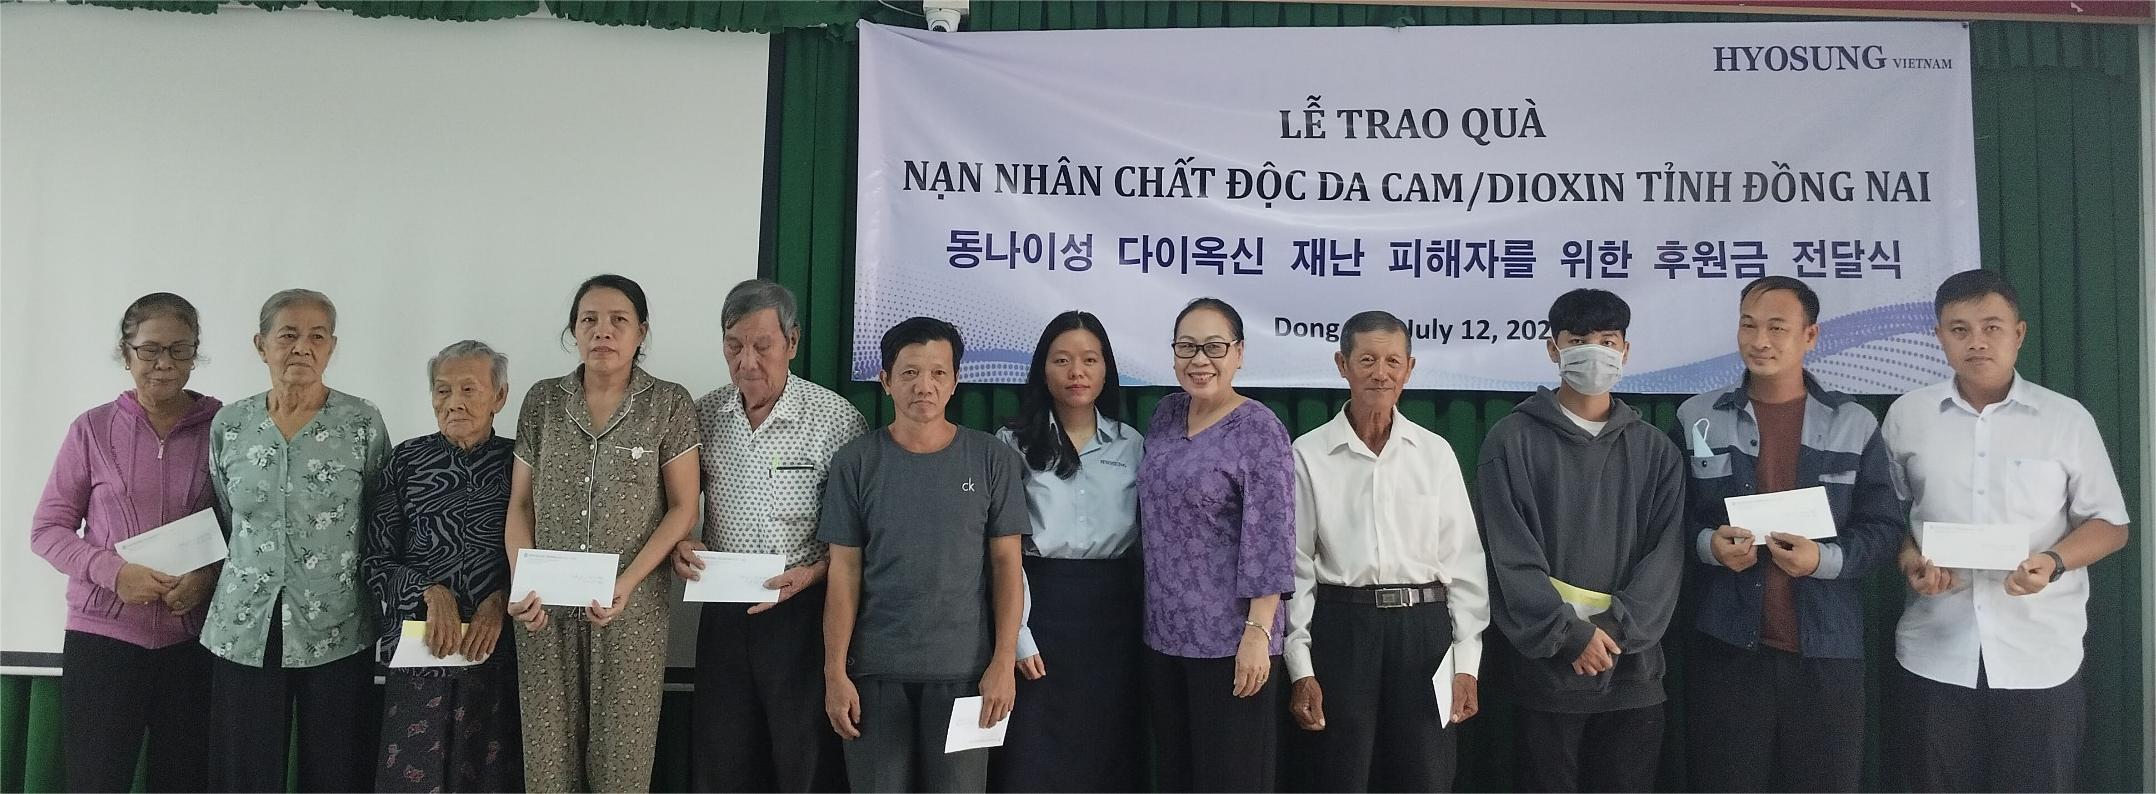 Đại diện Hội Nạn nhân chất độc da cam/dioxin tỉnh cùng Công ty TNHH Hyosung Việt Nam trao quà cho nạn nhân chất độc da cam tại huyện Nhơn Trạch. Ảnh: Nguyễn Hiên

